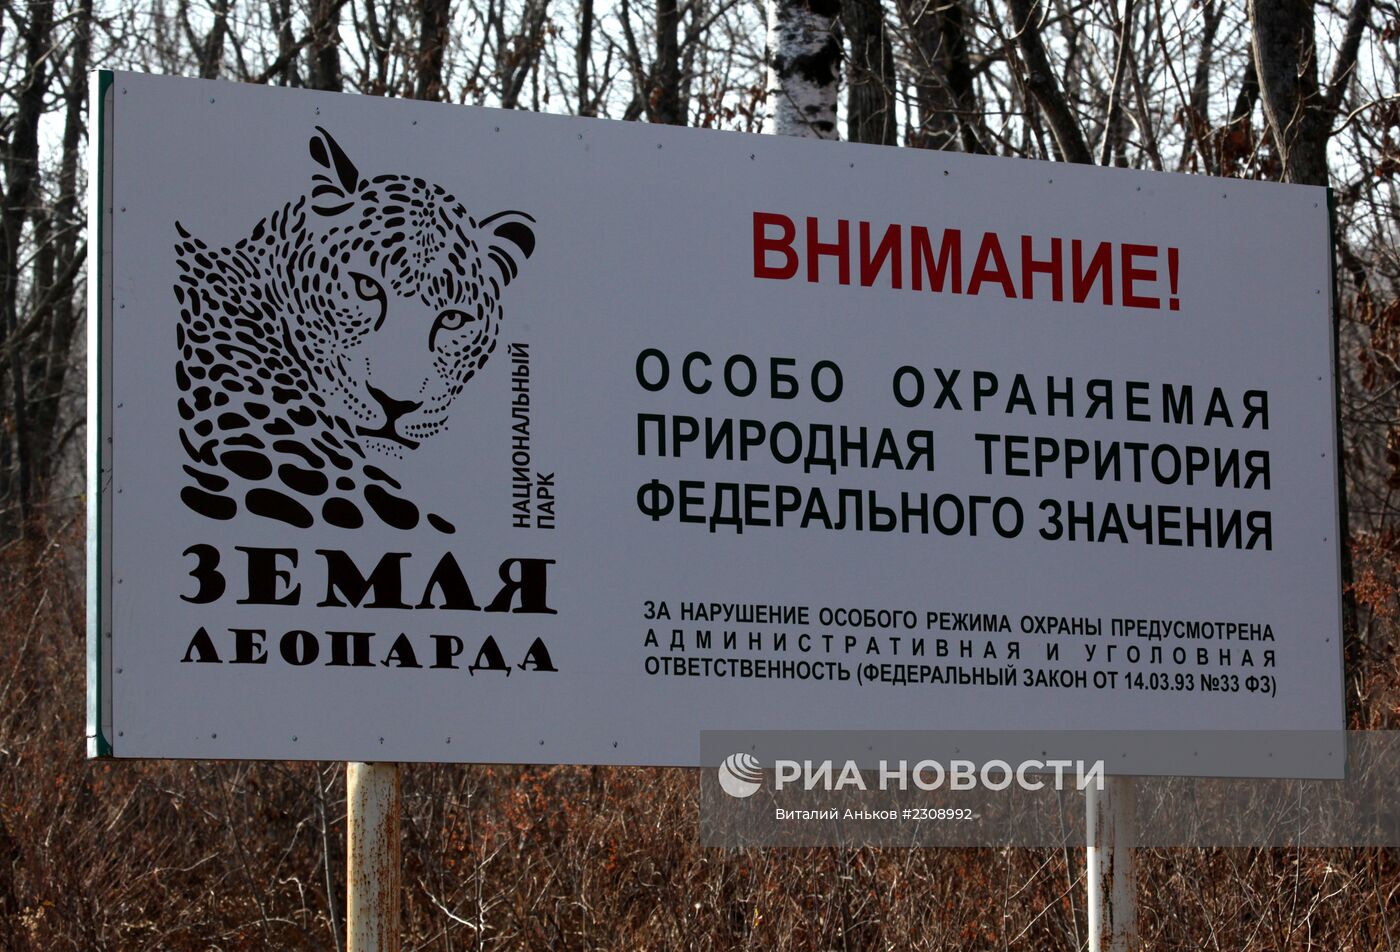 Национальный парк "Земля леопарда" в Приморском крае